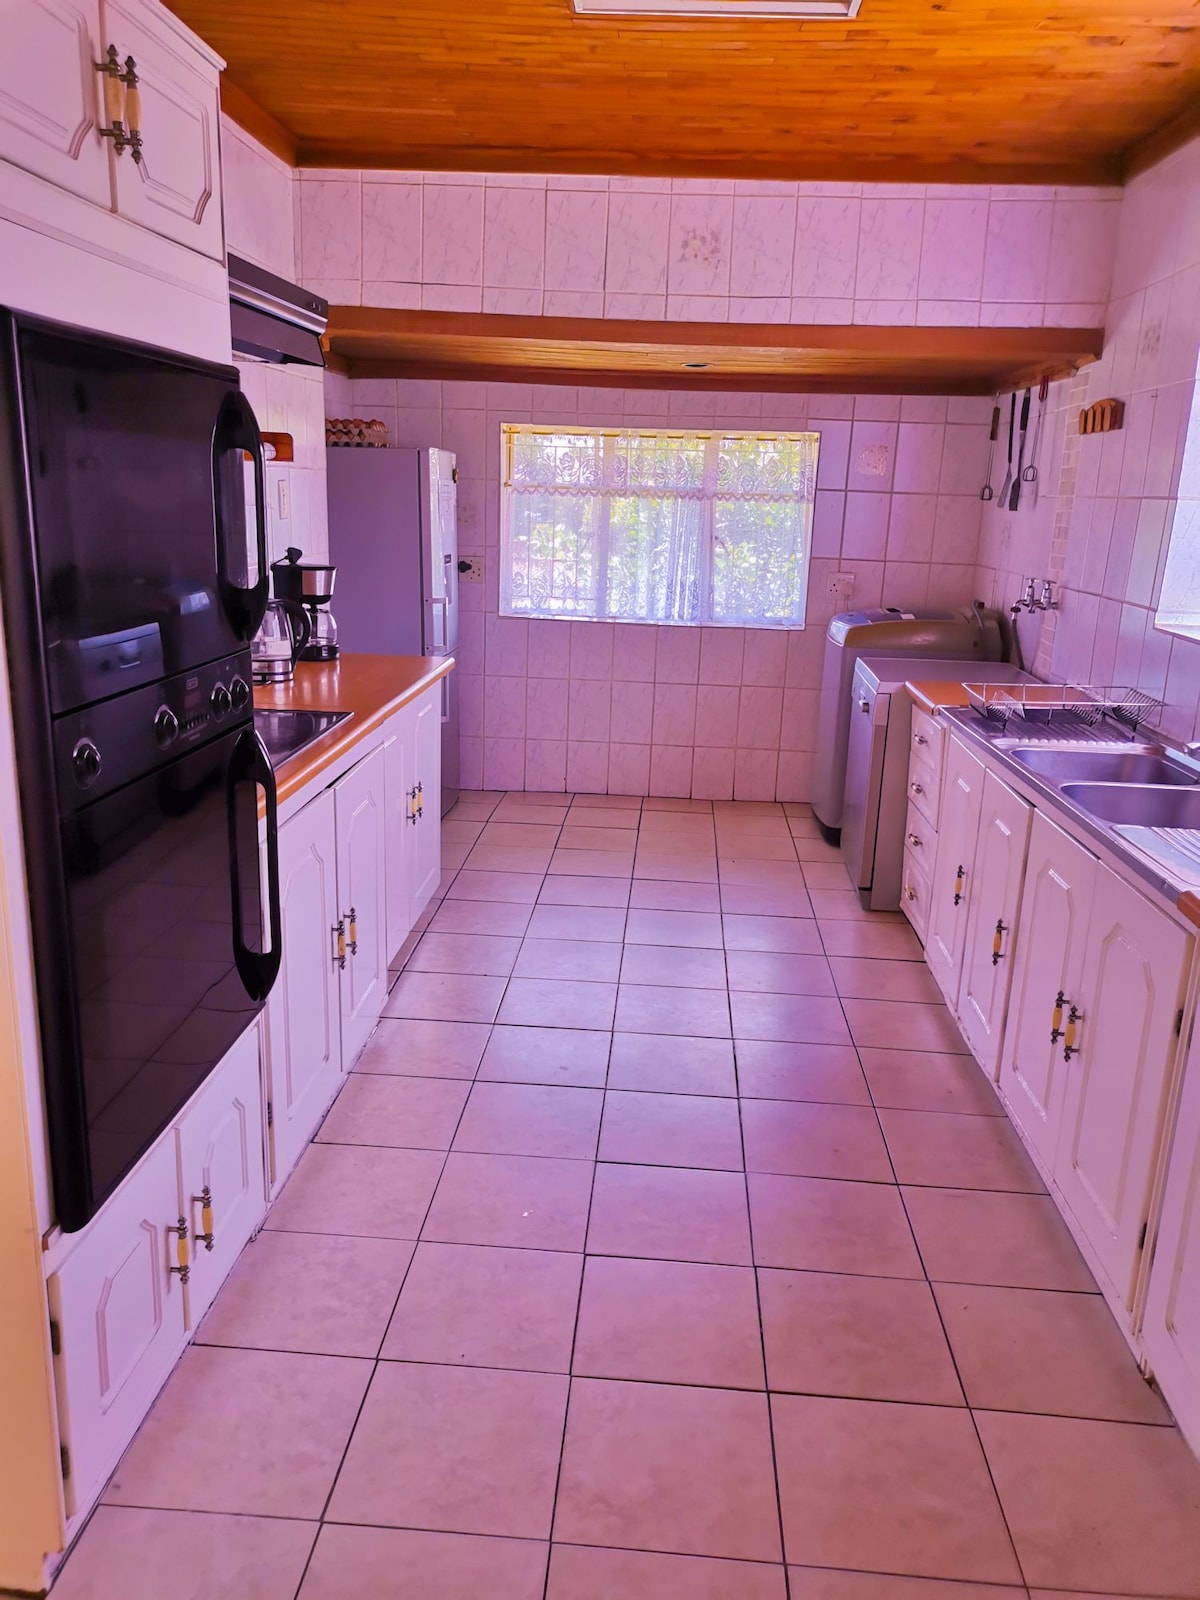 Ogies Ваканционни жилища и домове - Mpumalanga, Южна Африка | Airbnb